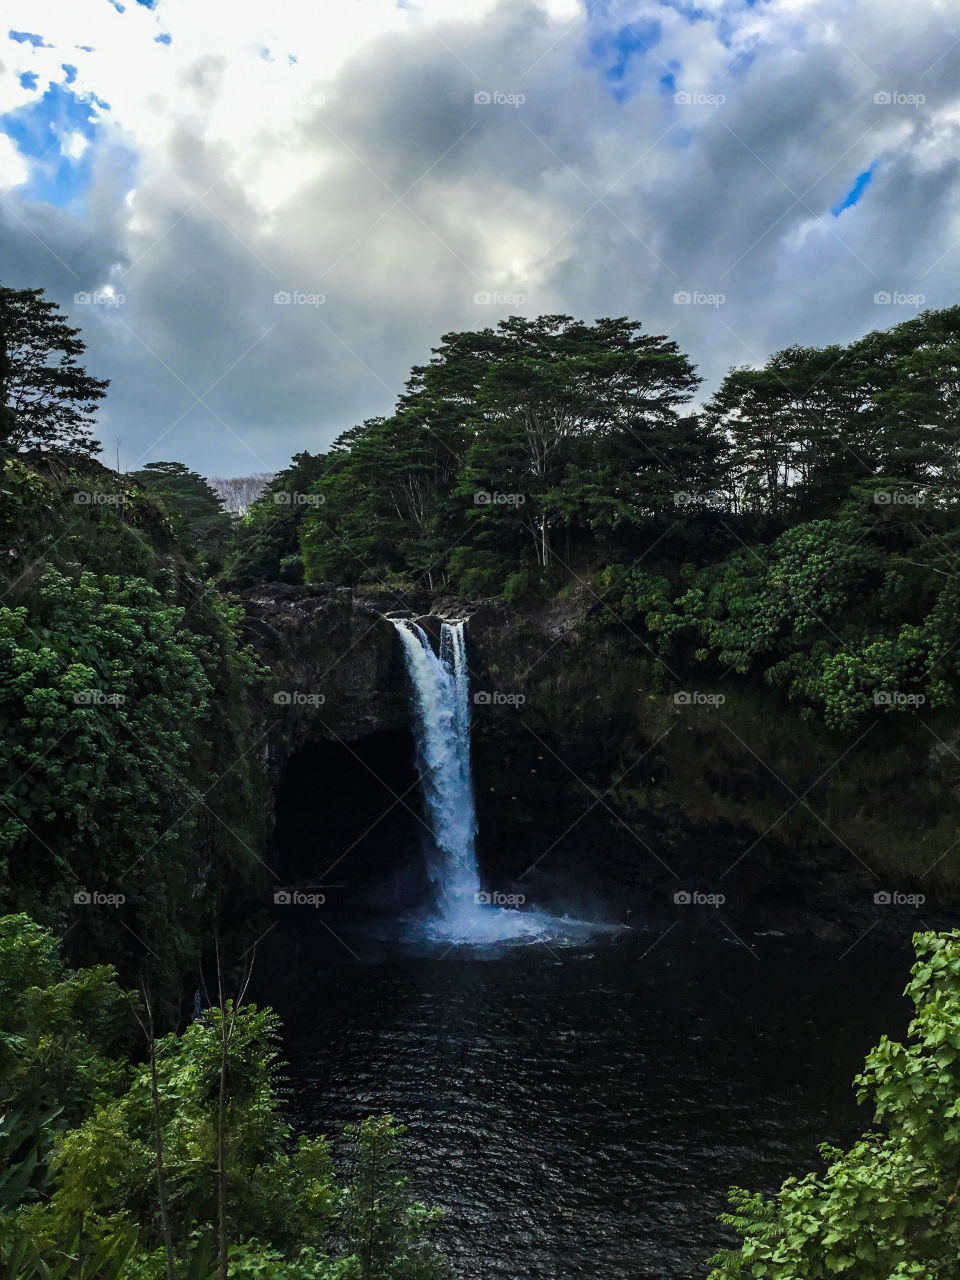 Rainbow Falls in Hilo, Hawaii